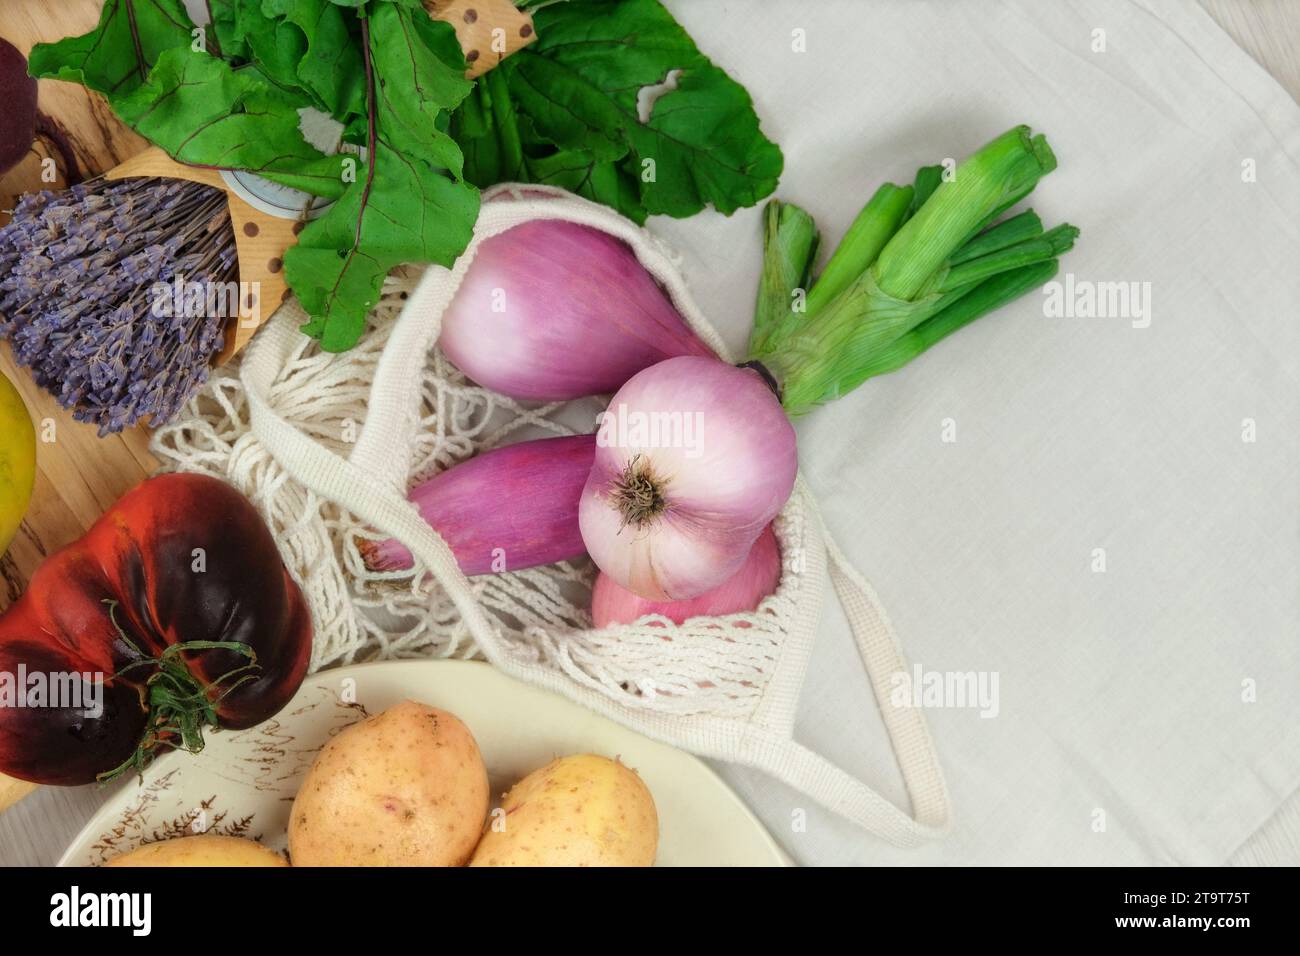 Échalotes oignons et autres légumes. Divers légumes. Betteraves, tomates, potatos. Style campagnard. Agriculture et récolte. Vue de dessus. Banque D'Images